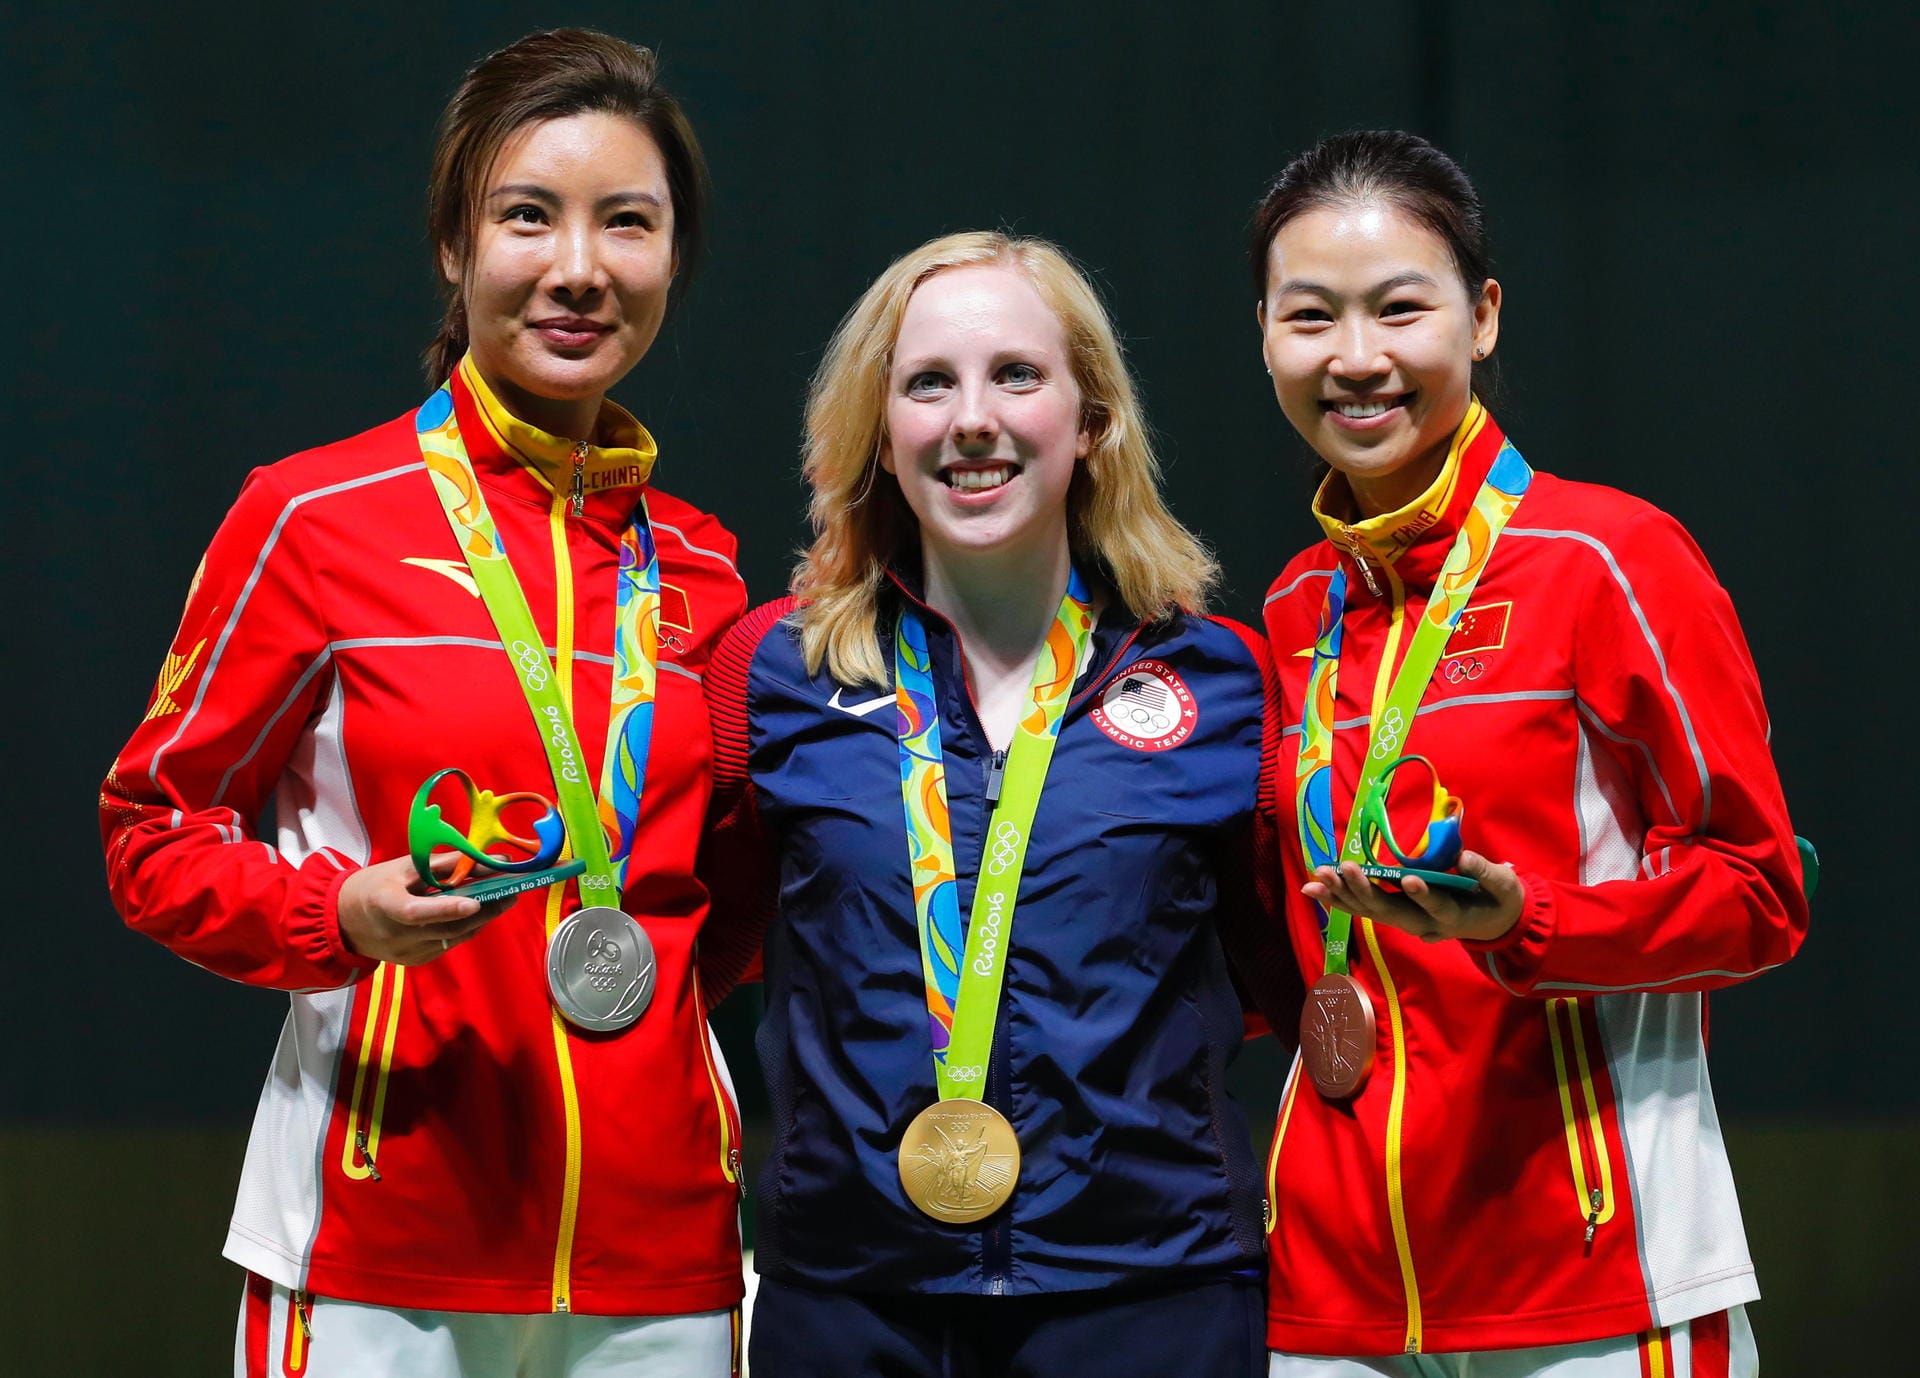 Die Nummer eins: Die US-Amerikanerin Virginia Thrasher (Mitte) hat das erste Gold von Rio gewonnen. Die Schützin setzte sich über 10 Meter mit dem Luftgewehr durch. Die Chinesin Li Du (links) wurde Zweite, Landsfrau Yi Siling kam auf Rang drei